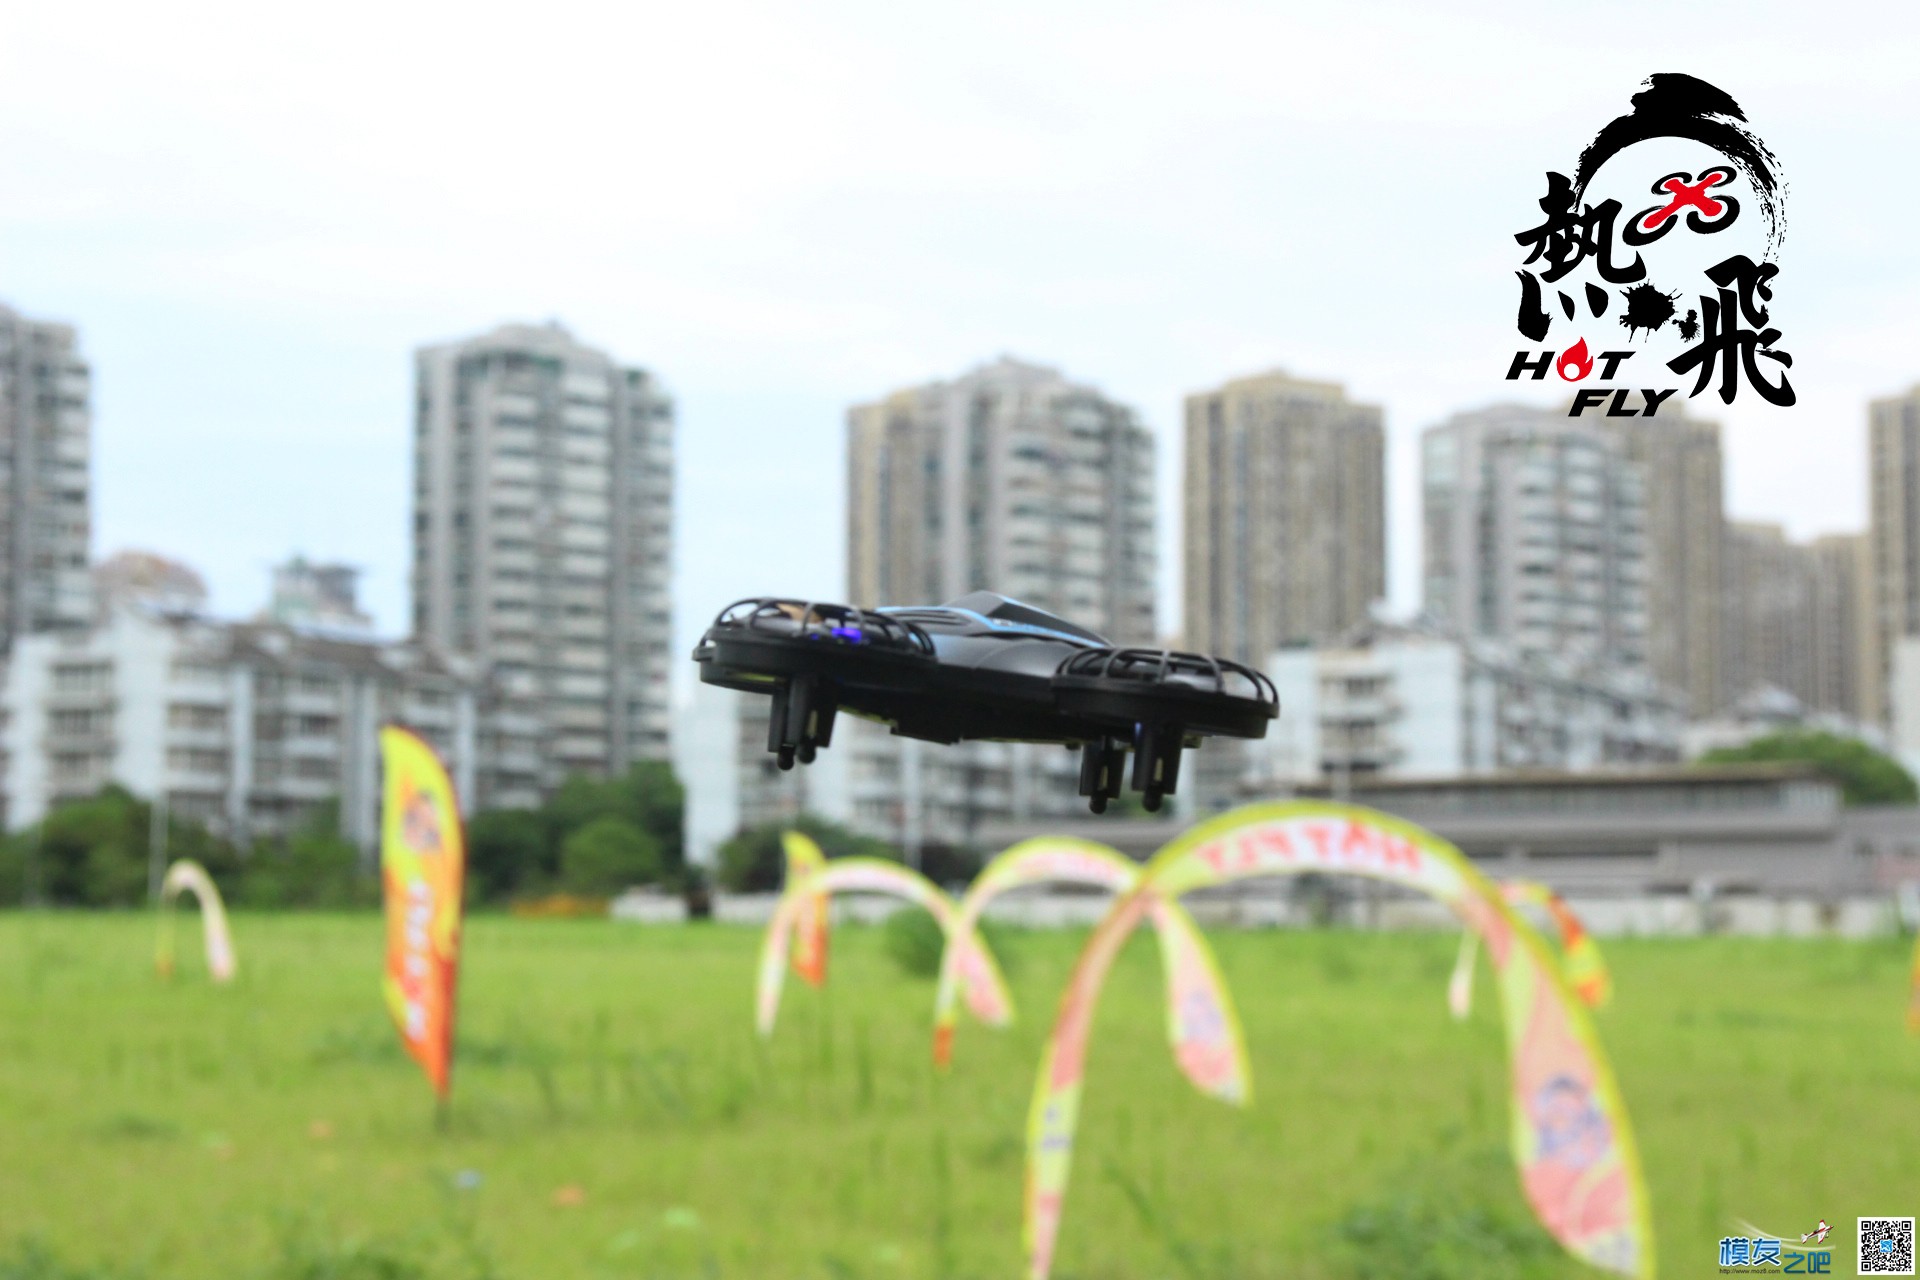 热飞视频+图片|7.9无人机总动员现场曝光各种最新机型 无人机 作者:杭州大碗 2210 